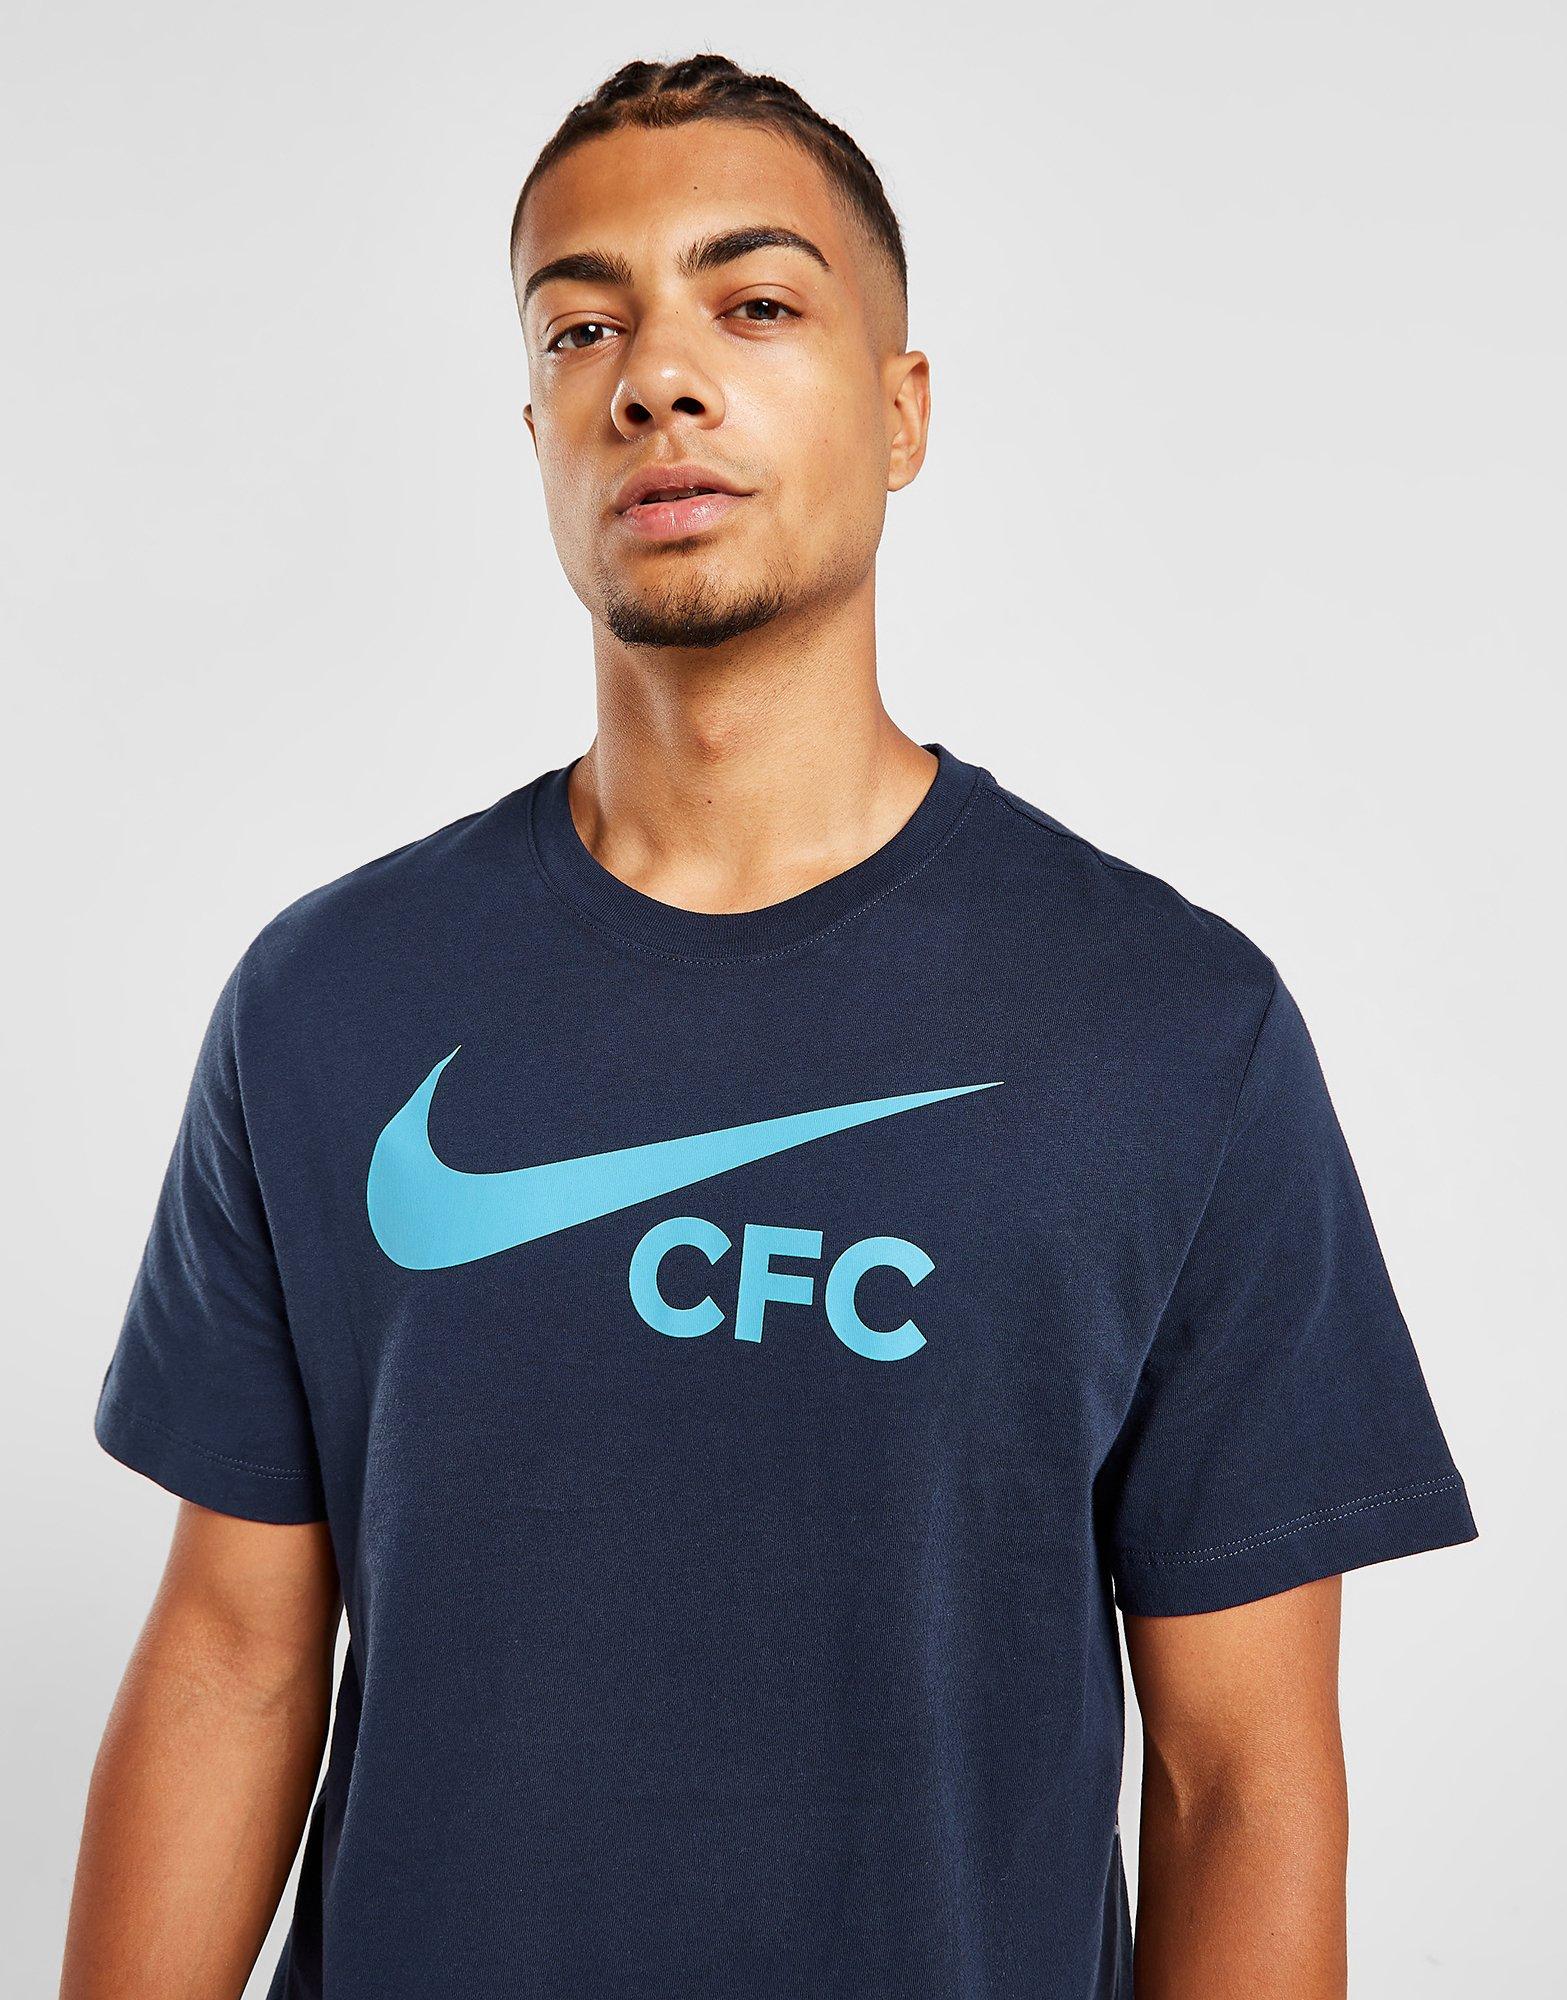 Coca intermitente Desacuerdo Nike Chelsea FC Swoosh T-Shirt en Azul | JD Sports España